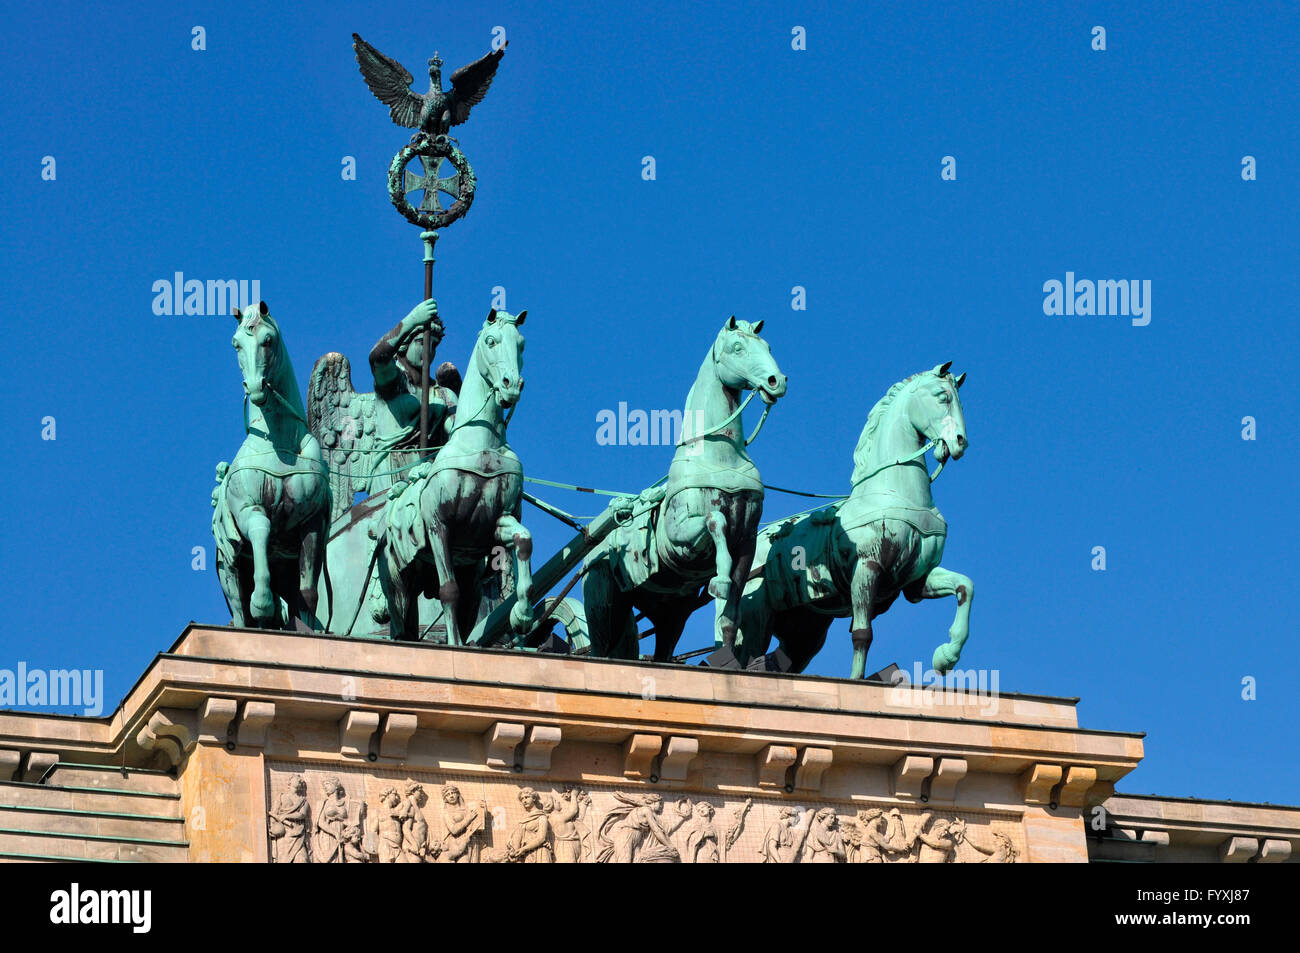 La Porta di Brandeburgo, la Quadriga, Brandenburger Tor, Pariser Platz, nel quartiere Mitte di Berlino, Germania Foto Stock